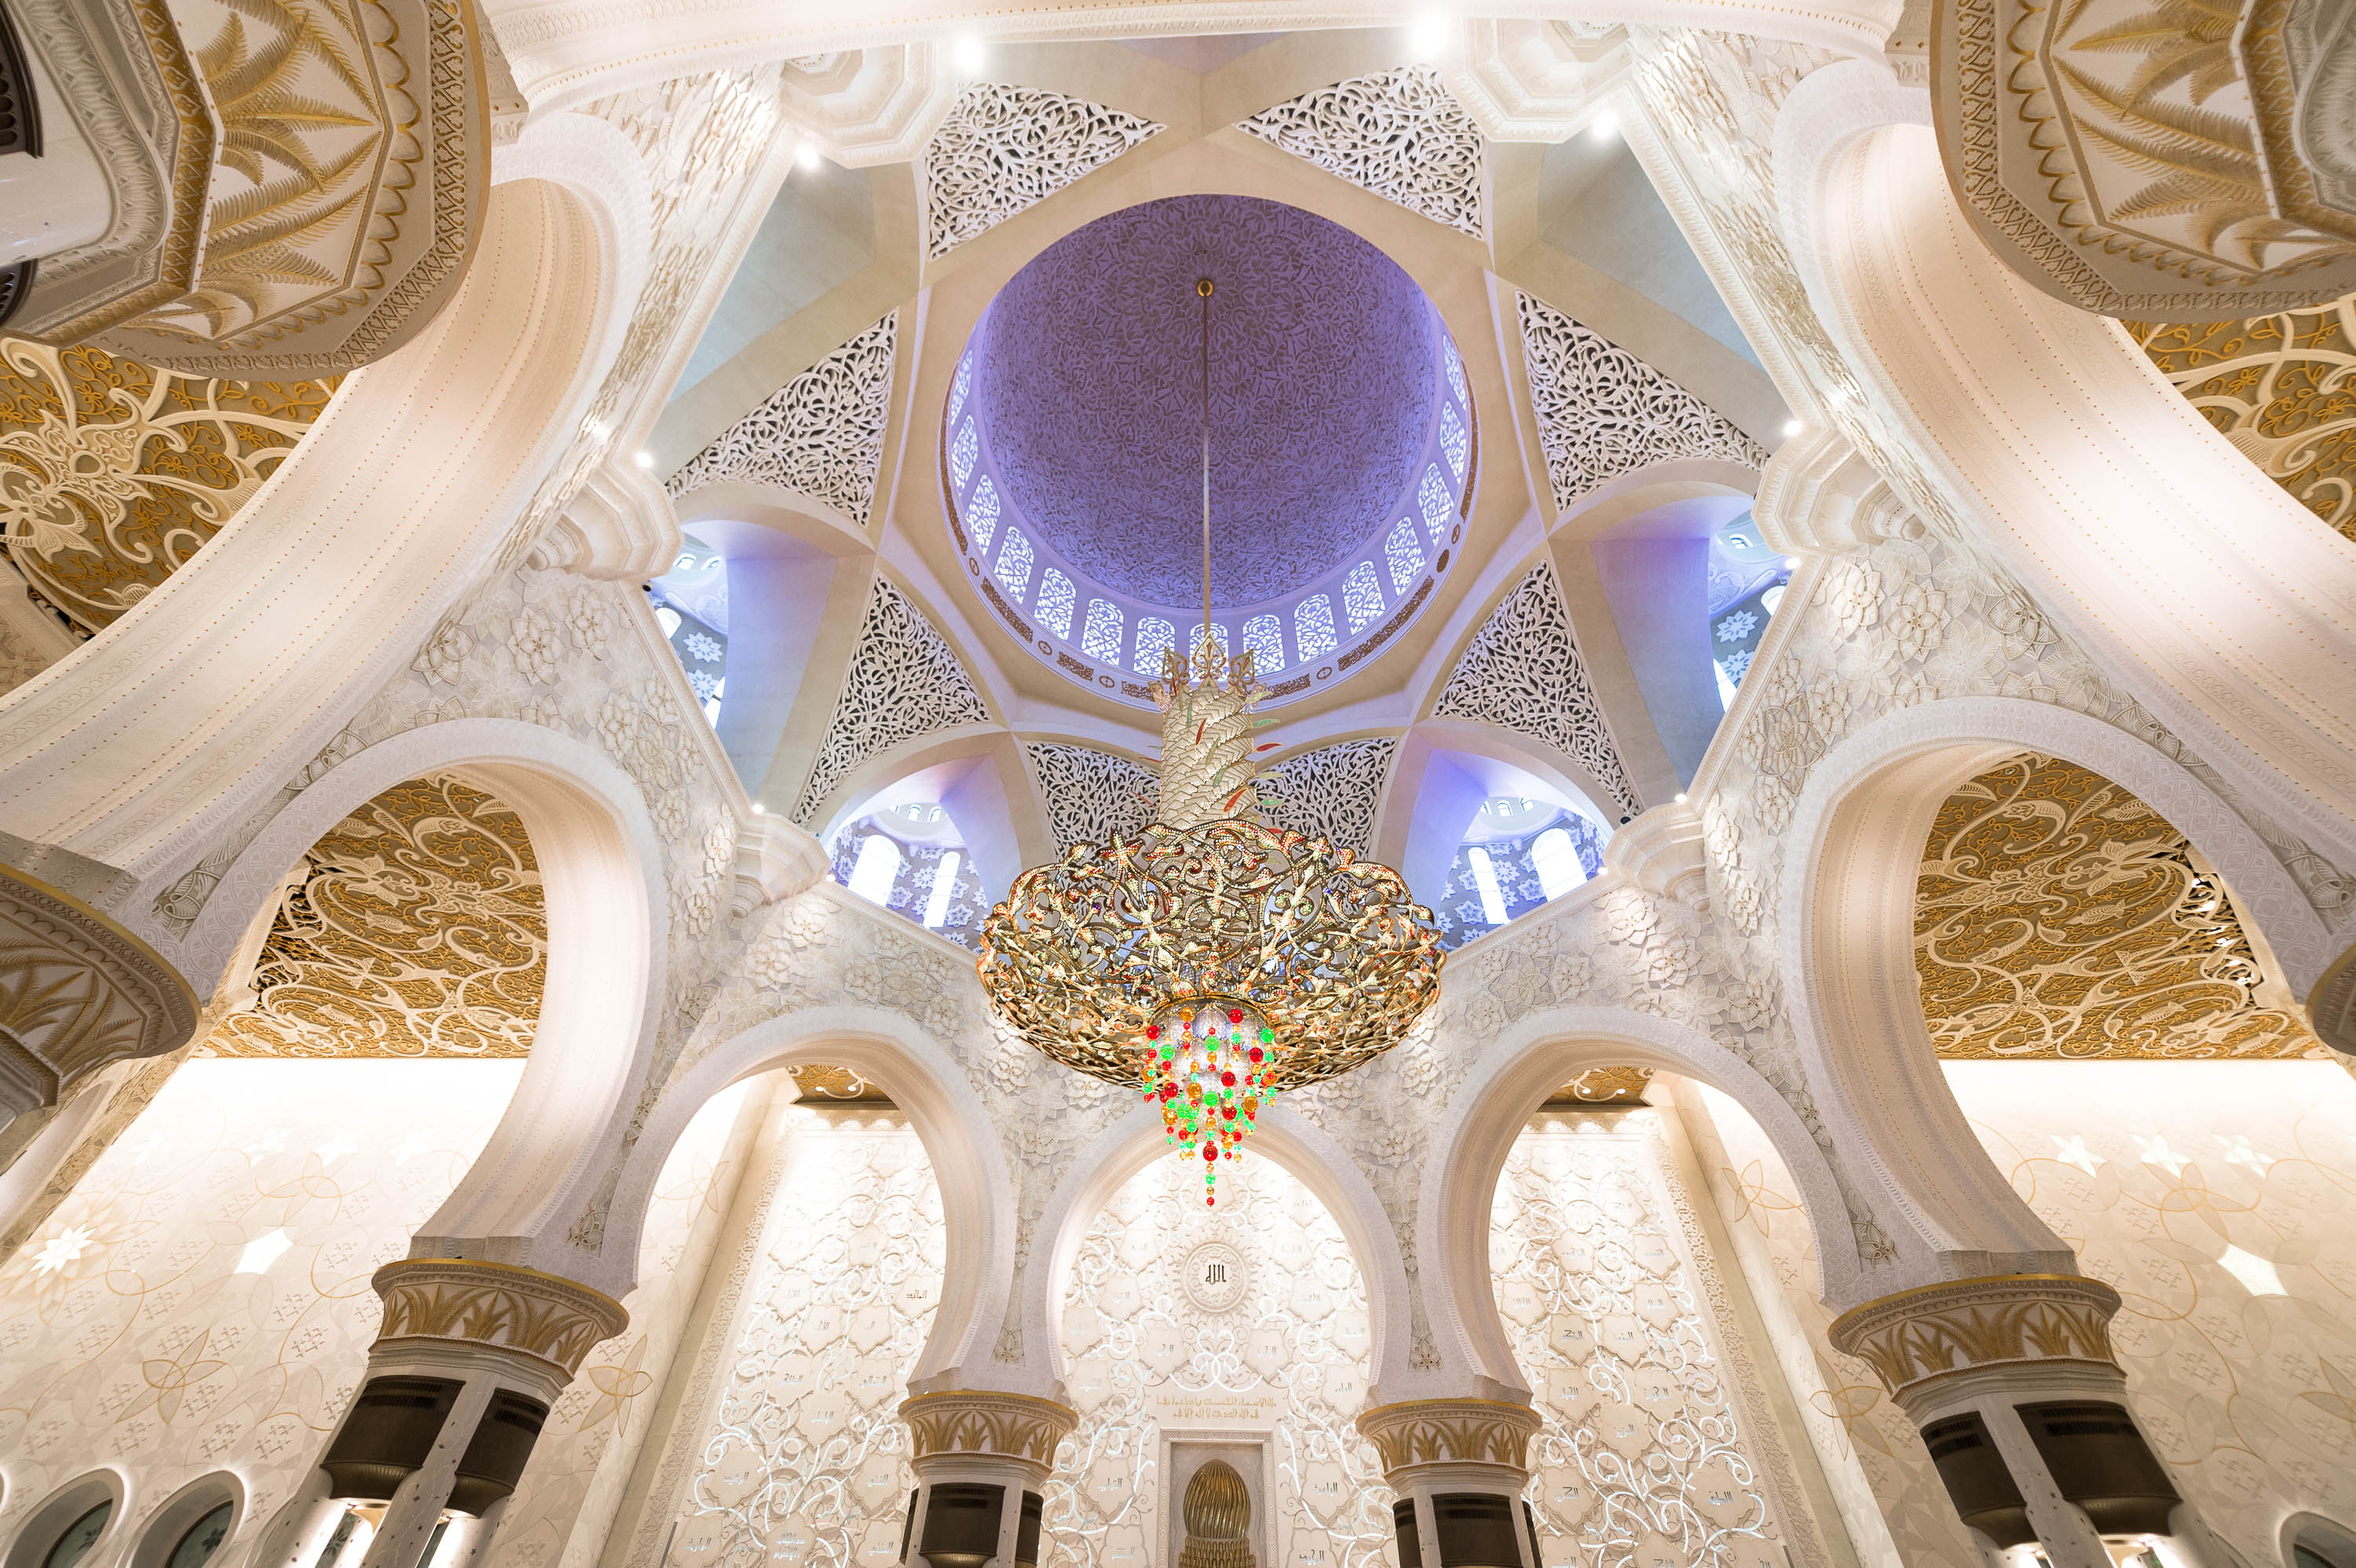 Мечеть шейха Зайда в Абу-Даби, ОАЭ